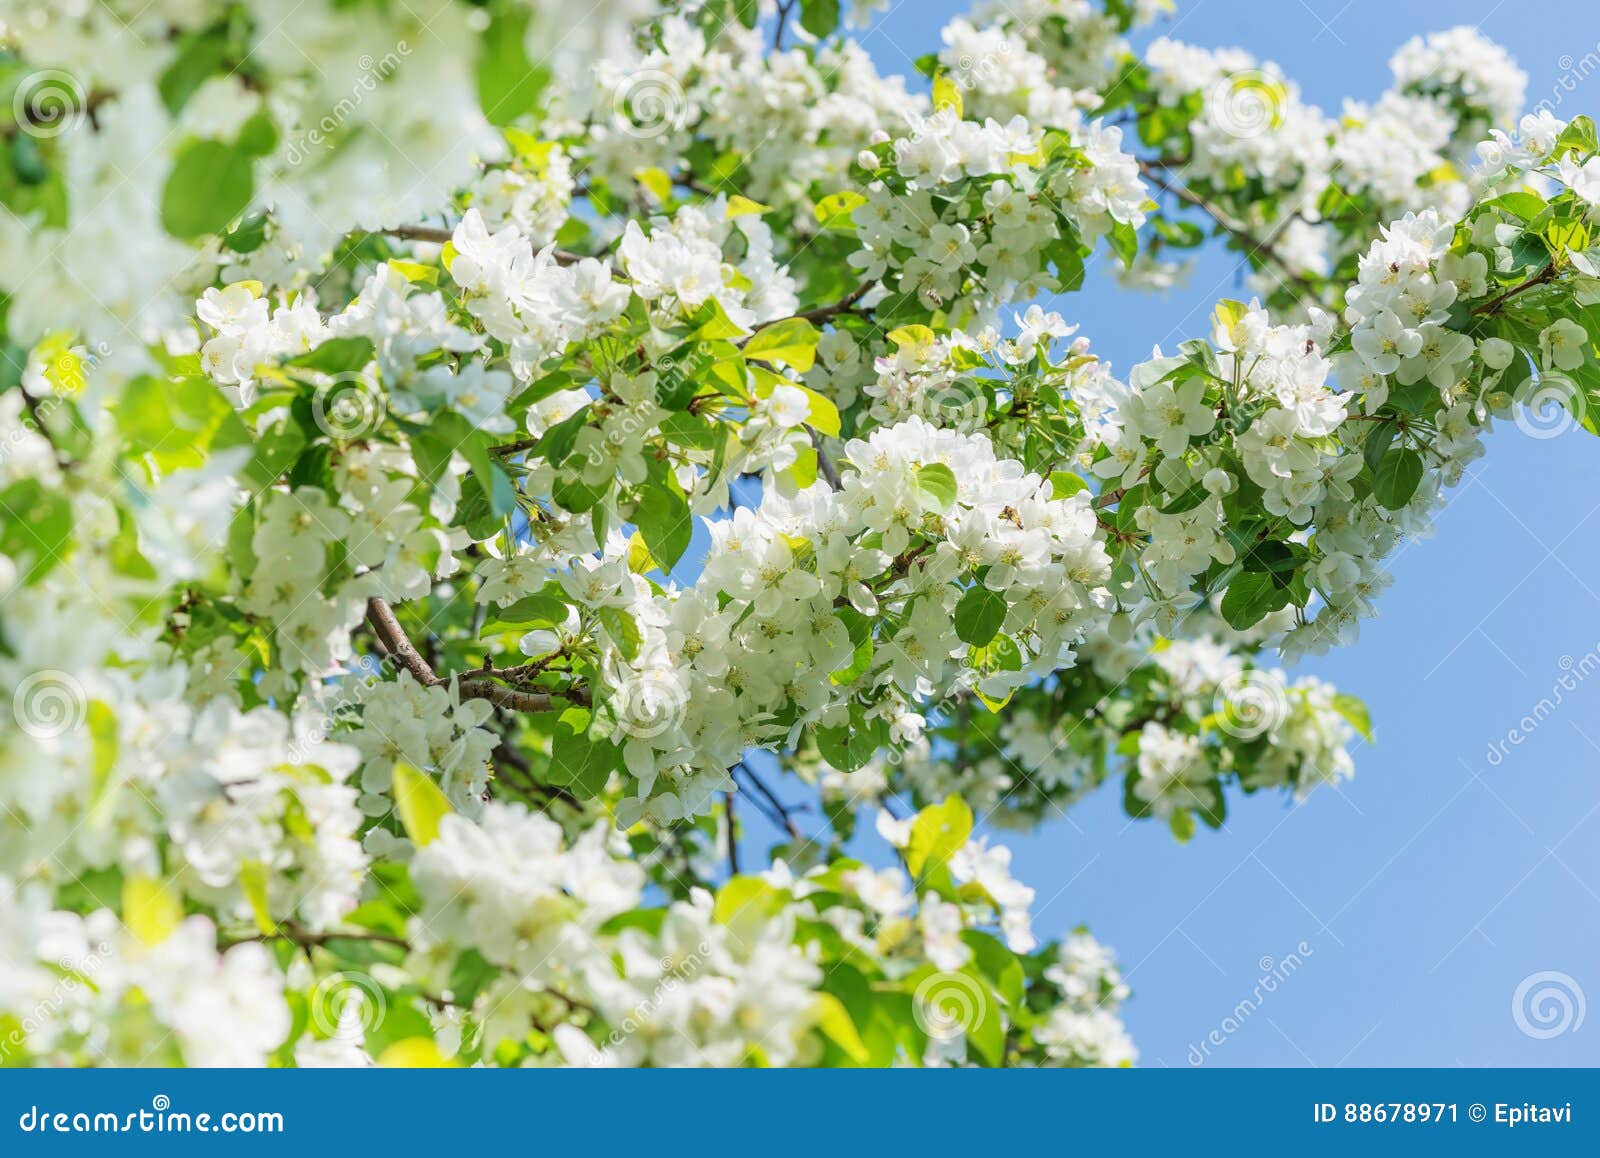 Bloeiende appelbomen. De boomtakken van de Lushly bloeiende die appel met witte bloemen tegen een blauwe hemelachtergrond worden behandeld